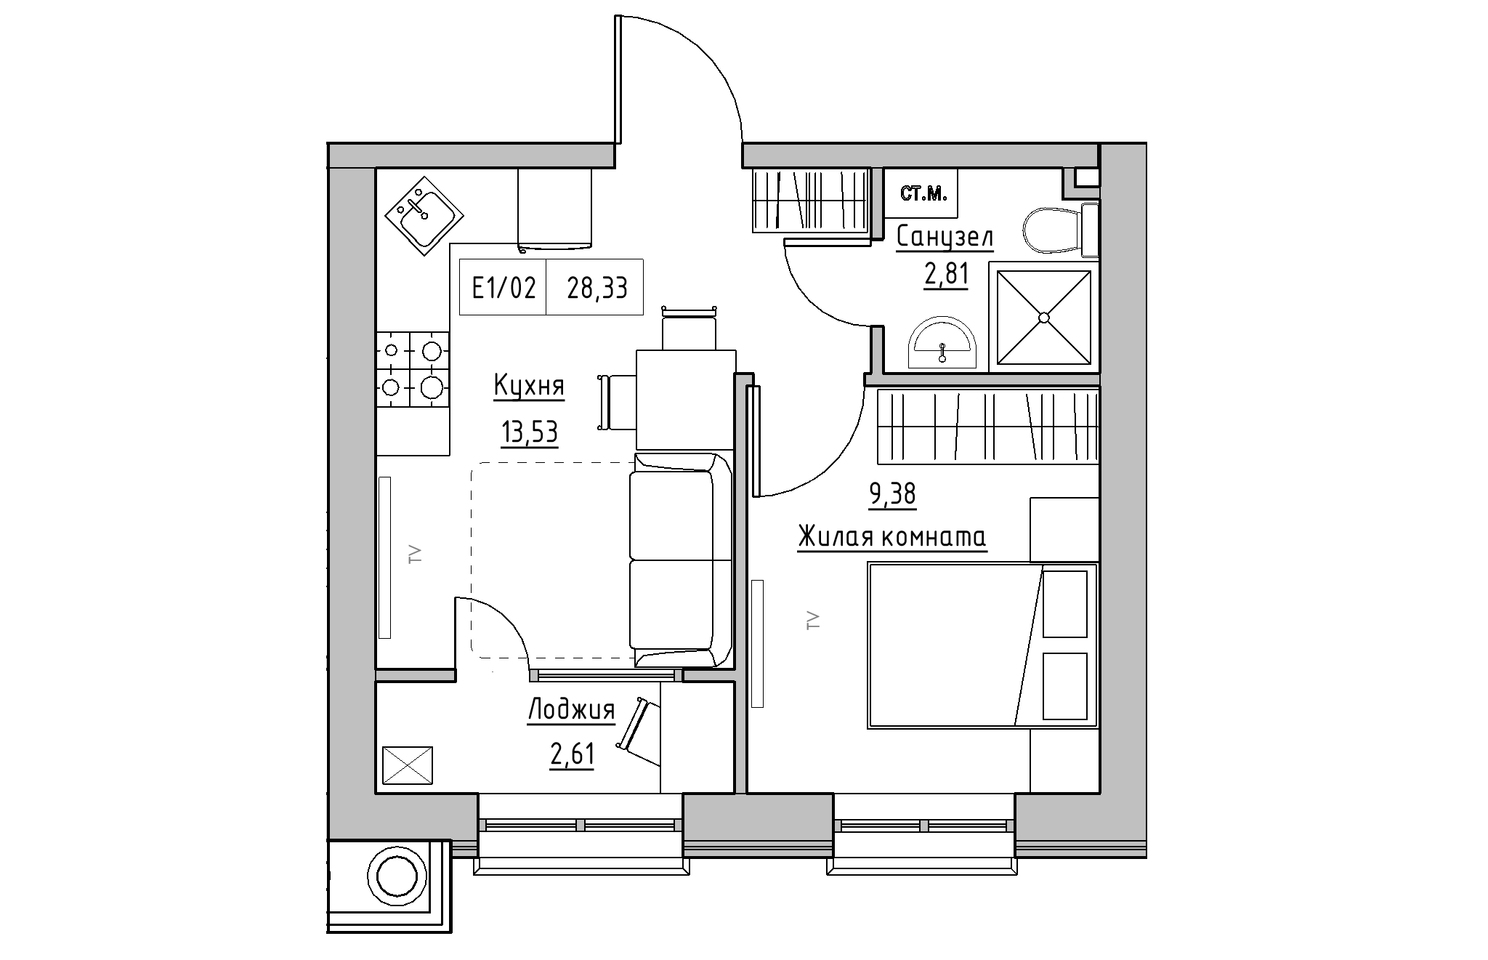 Планування 1-к квартира площею 28.33м2, KS-010-02/0001.